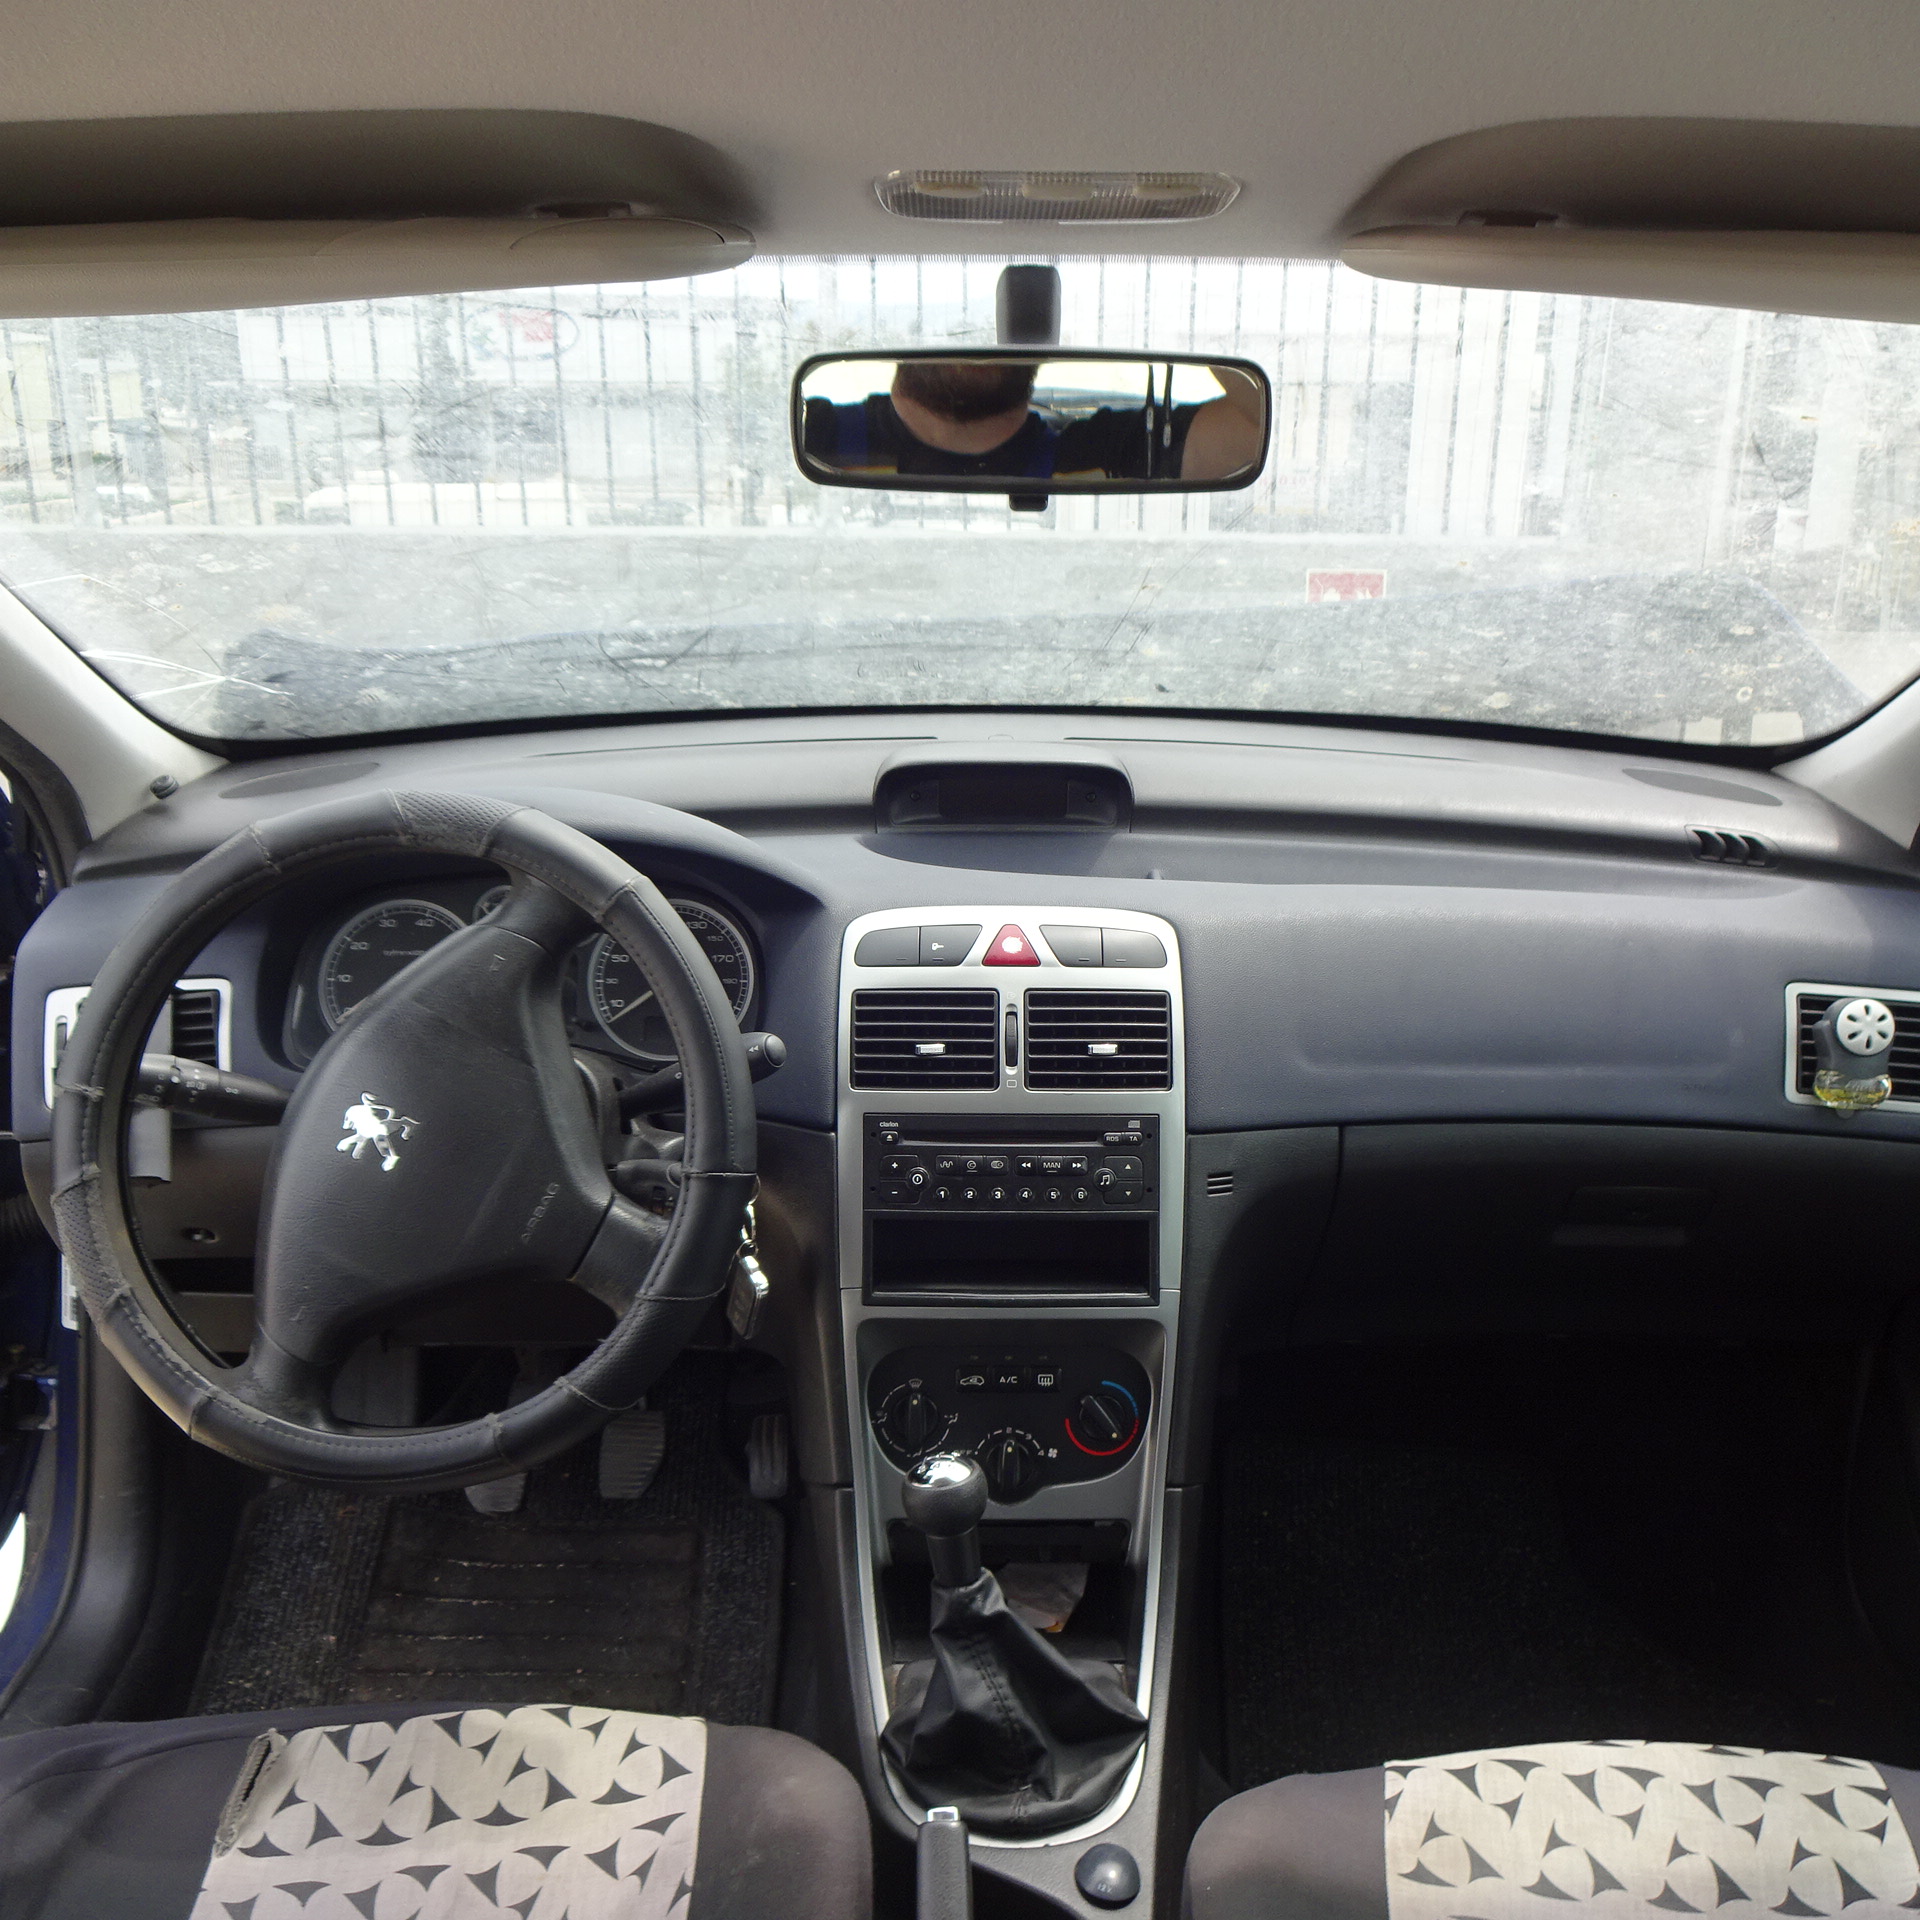 Τιμόνι (Βολάν) Peugeot 307 ’01 Προσφορά